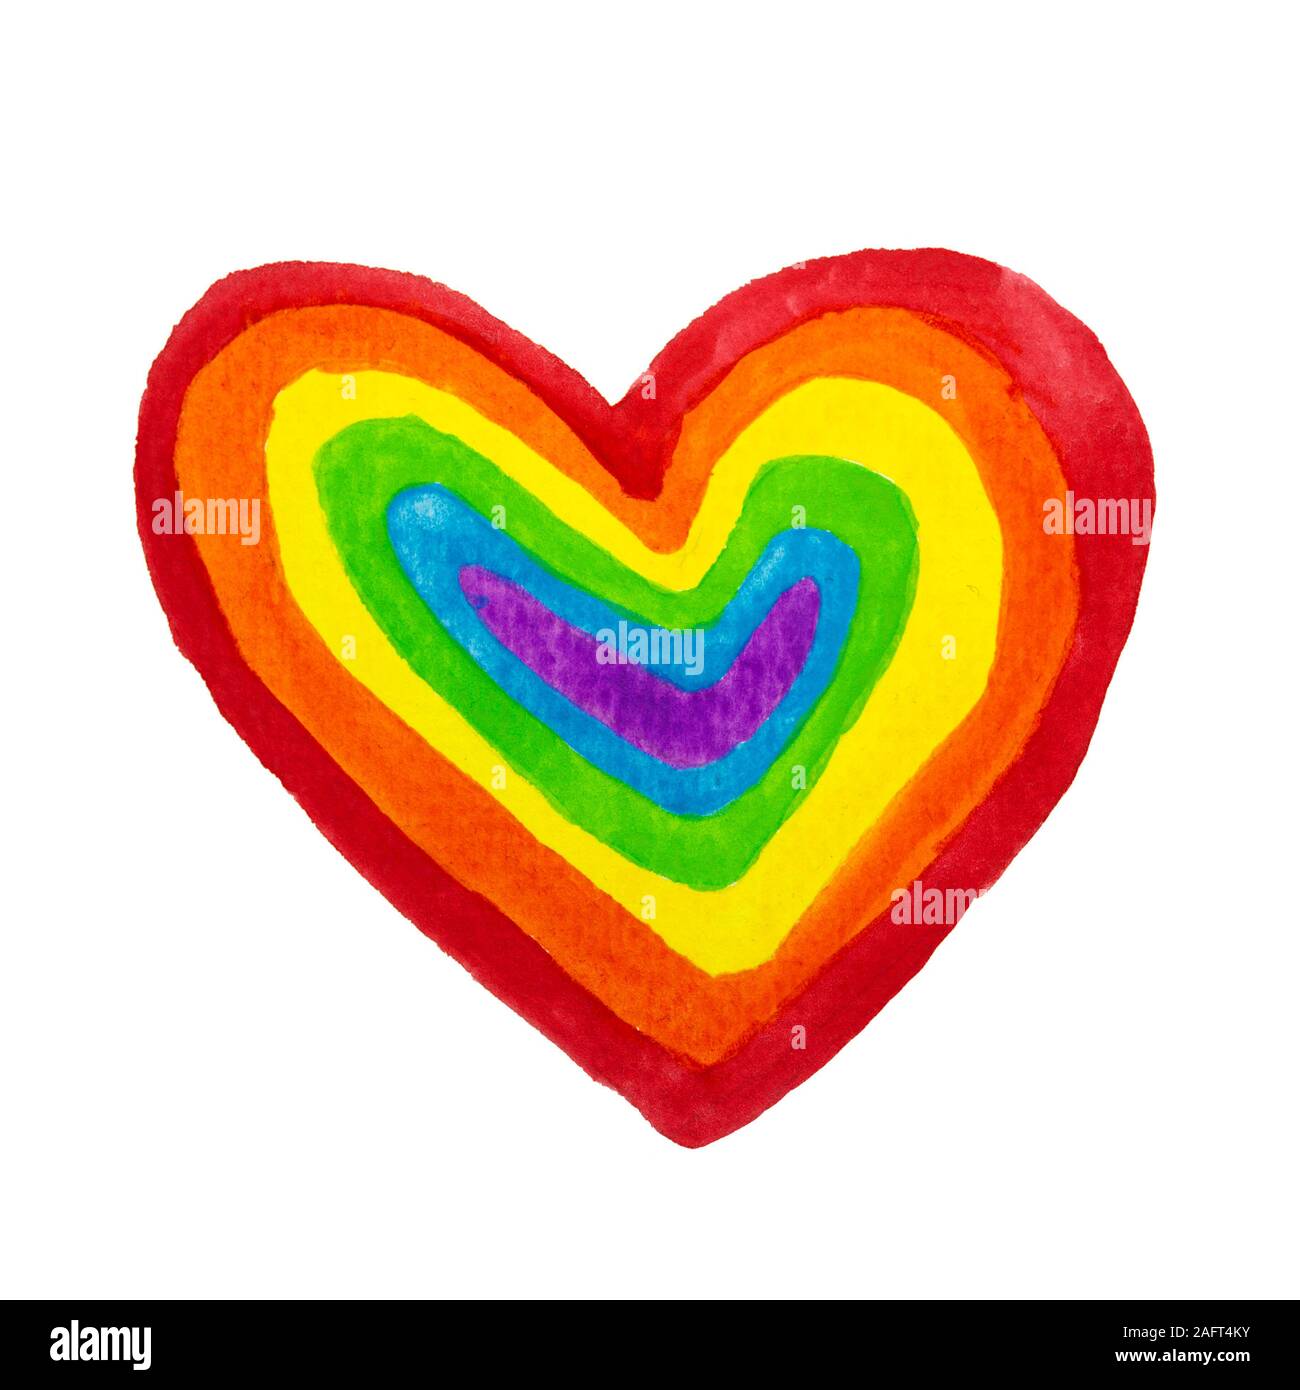 Dibujado a mano en forma de corazón de lápiz colores arco iris. LGBT, LGBTQ+ o concepto de igualdad gay Foto de stock